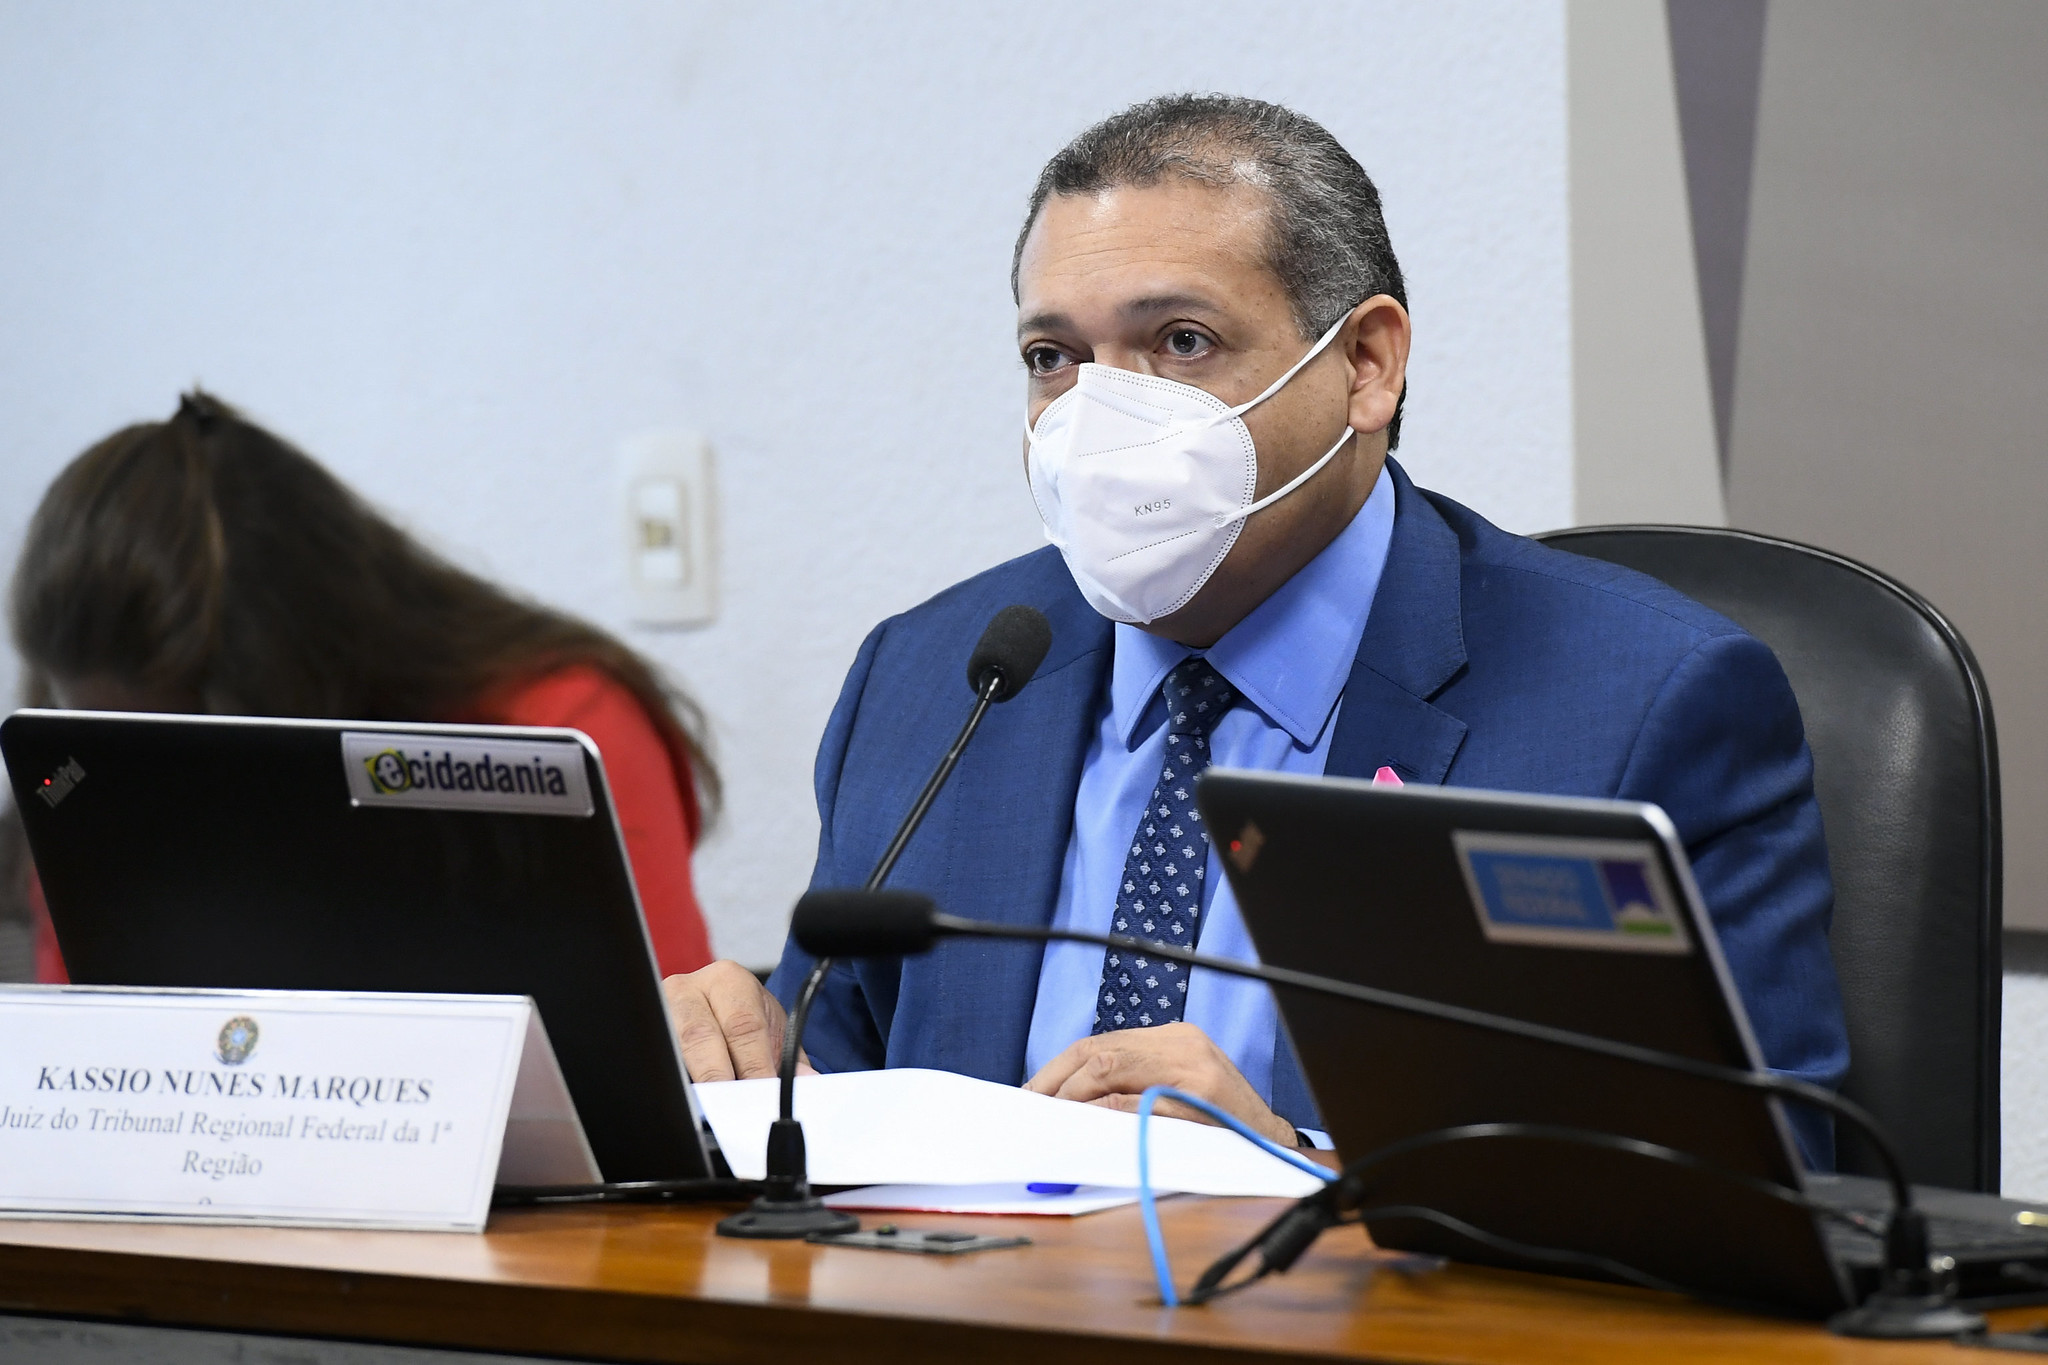 A discussão, iniciada em dezembro de 2018, ganhou força após hackers divulgarem mensagens privadas trocadas por Moro e integrantes da força-tarefa da Lava Jato em Curitiba